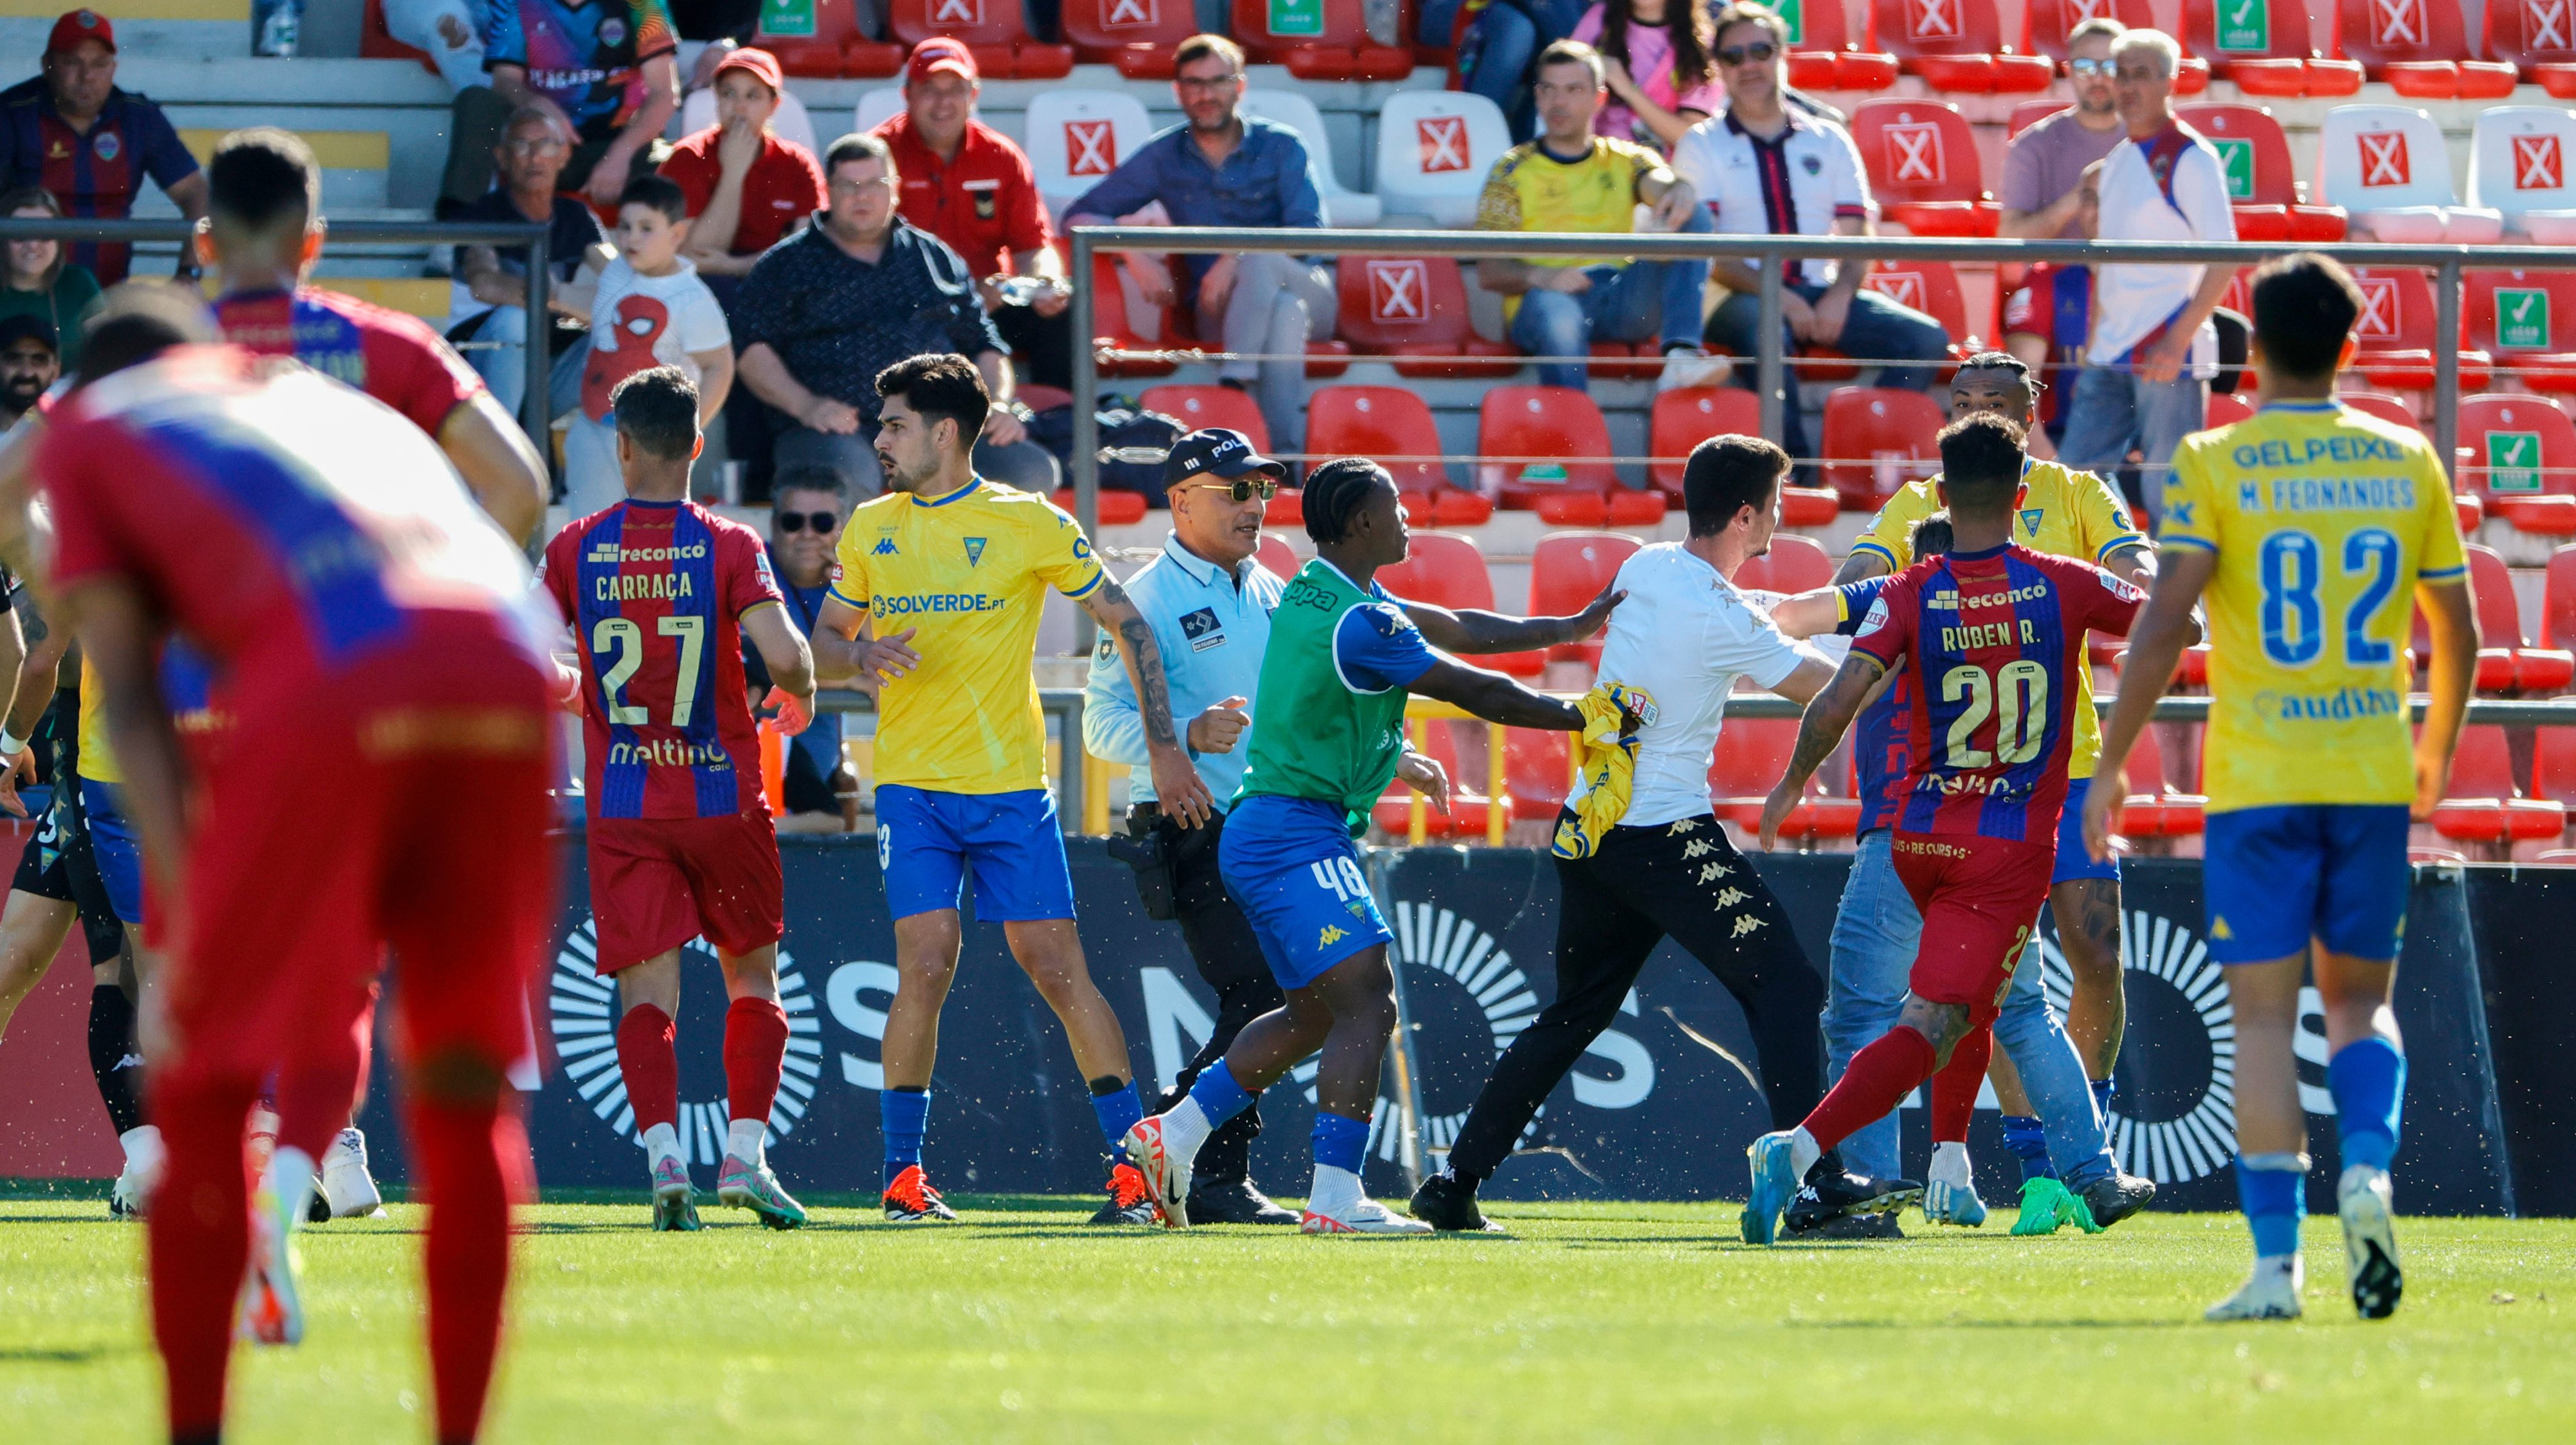 O jogo estava 1-2, mas acabaria por resultar num empate depois da expulsão de dois jogadores do Estoril